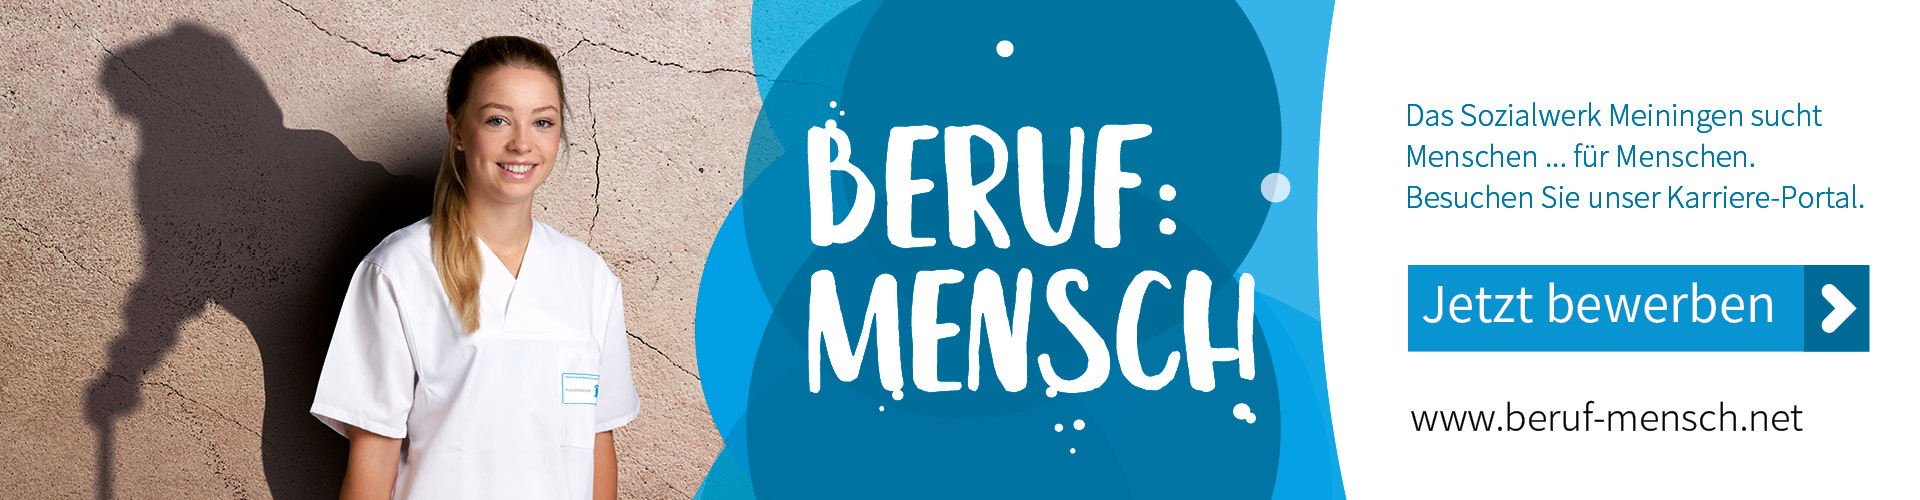 www.beruf-mensch.net